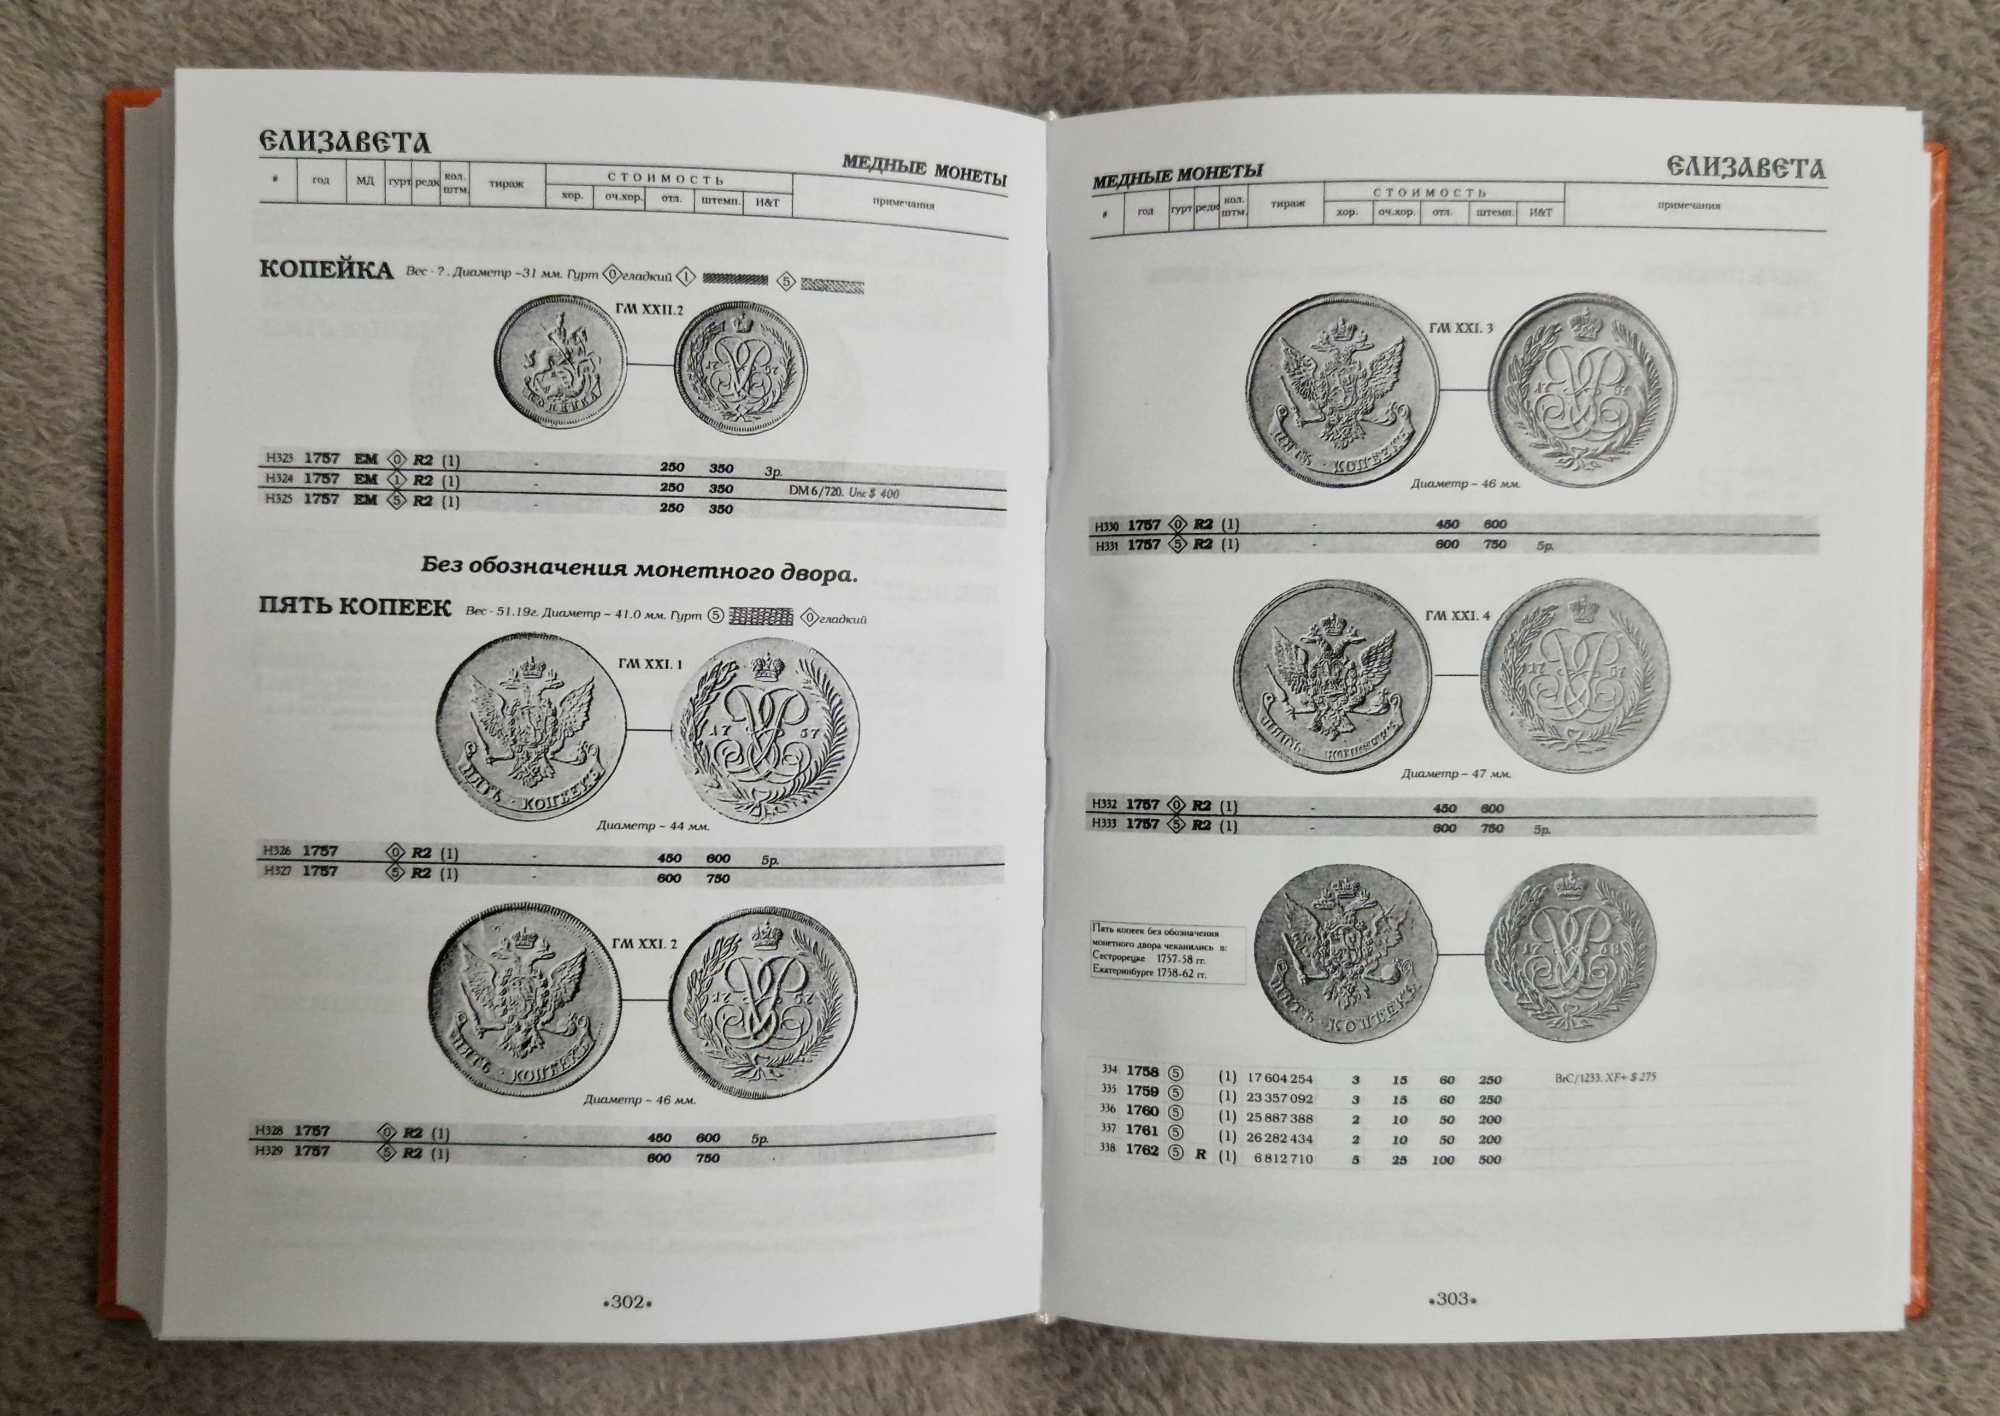 Сводный Каталог монет Императорской россии регулярного чекана – Биткин